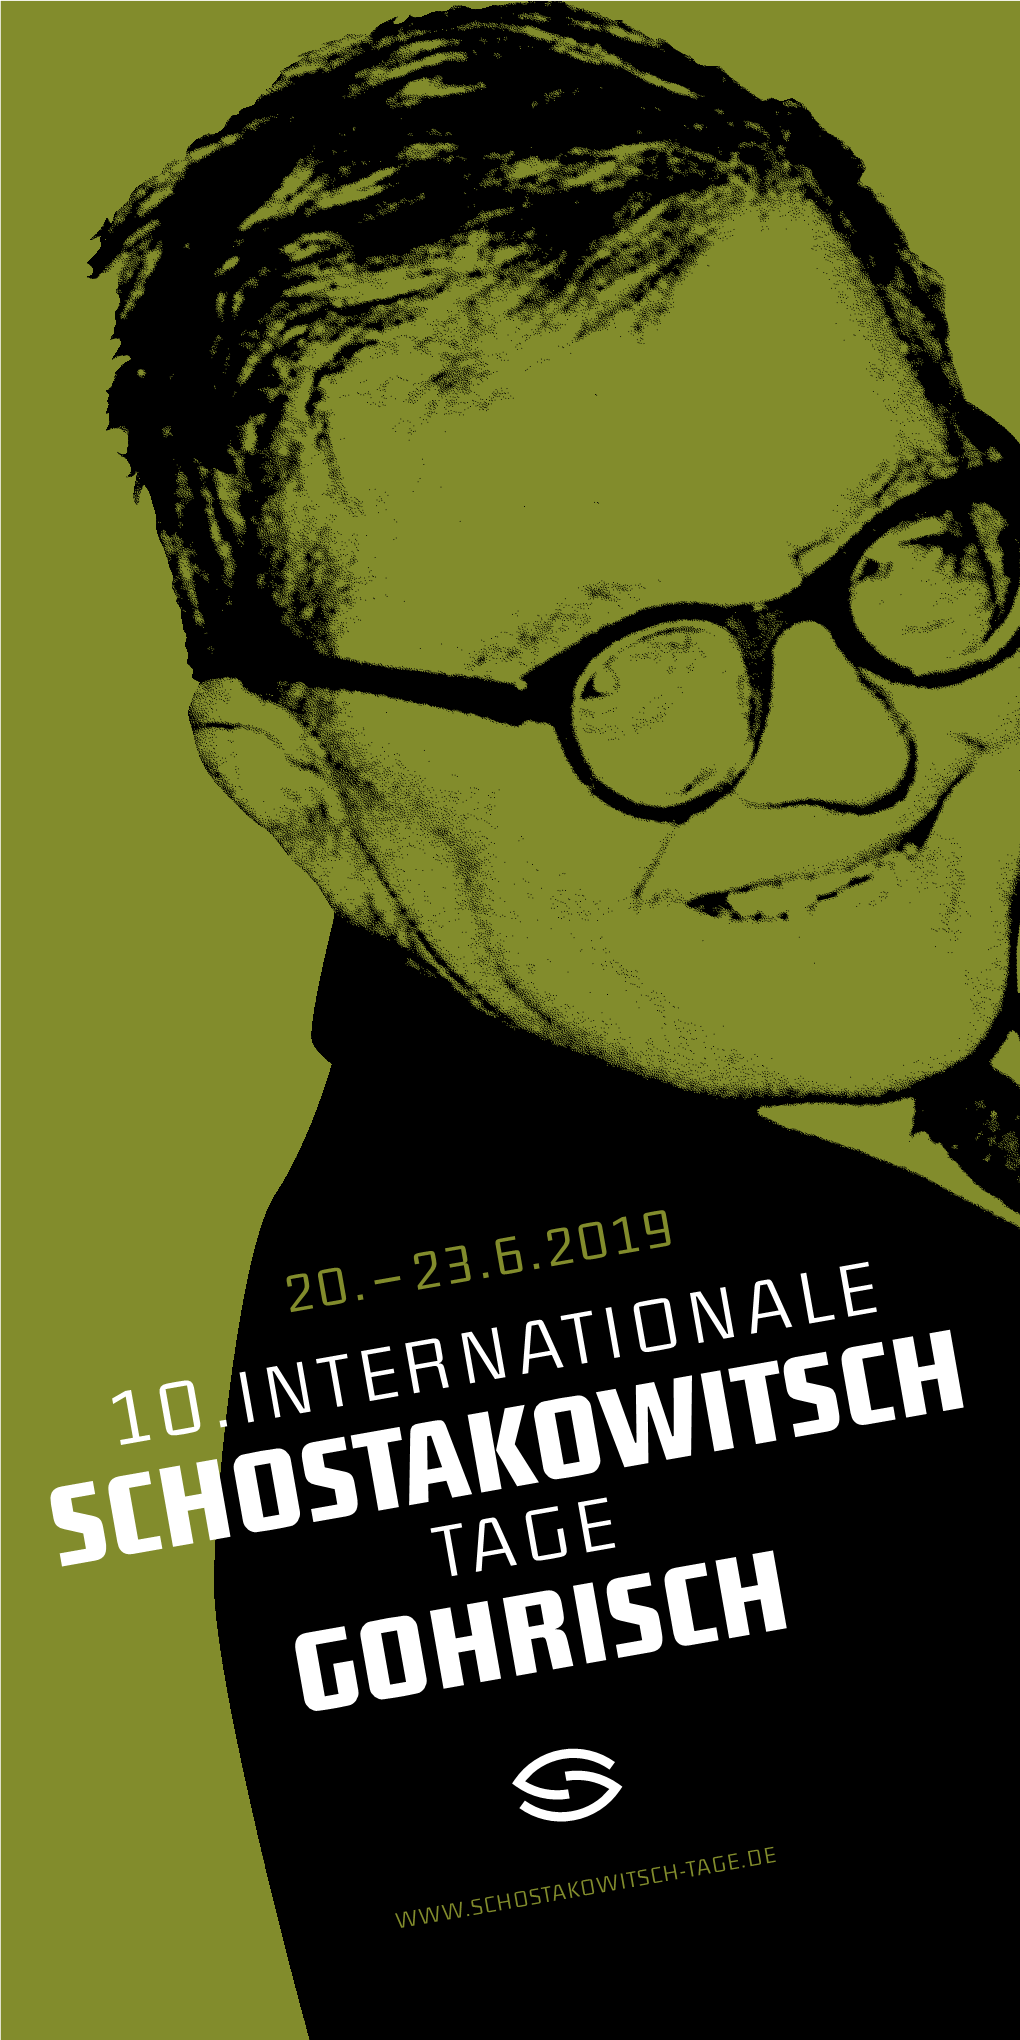 Schostakowitsch Gohrisch